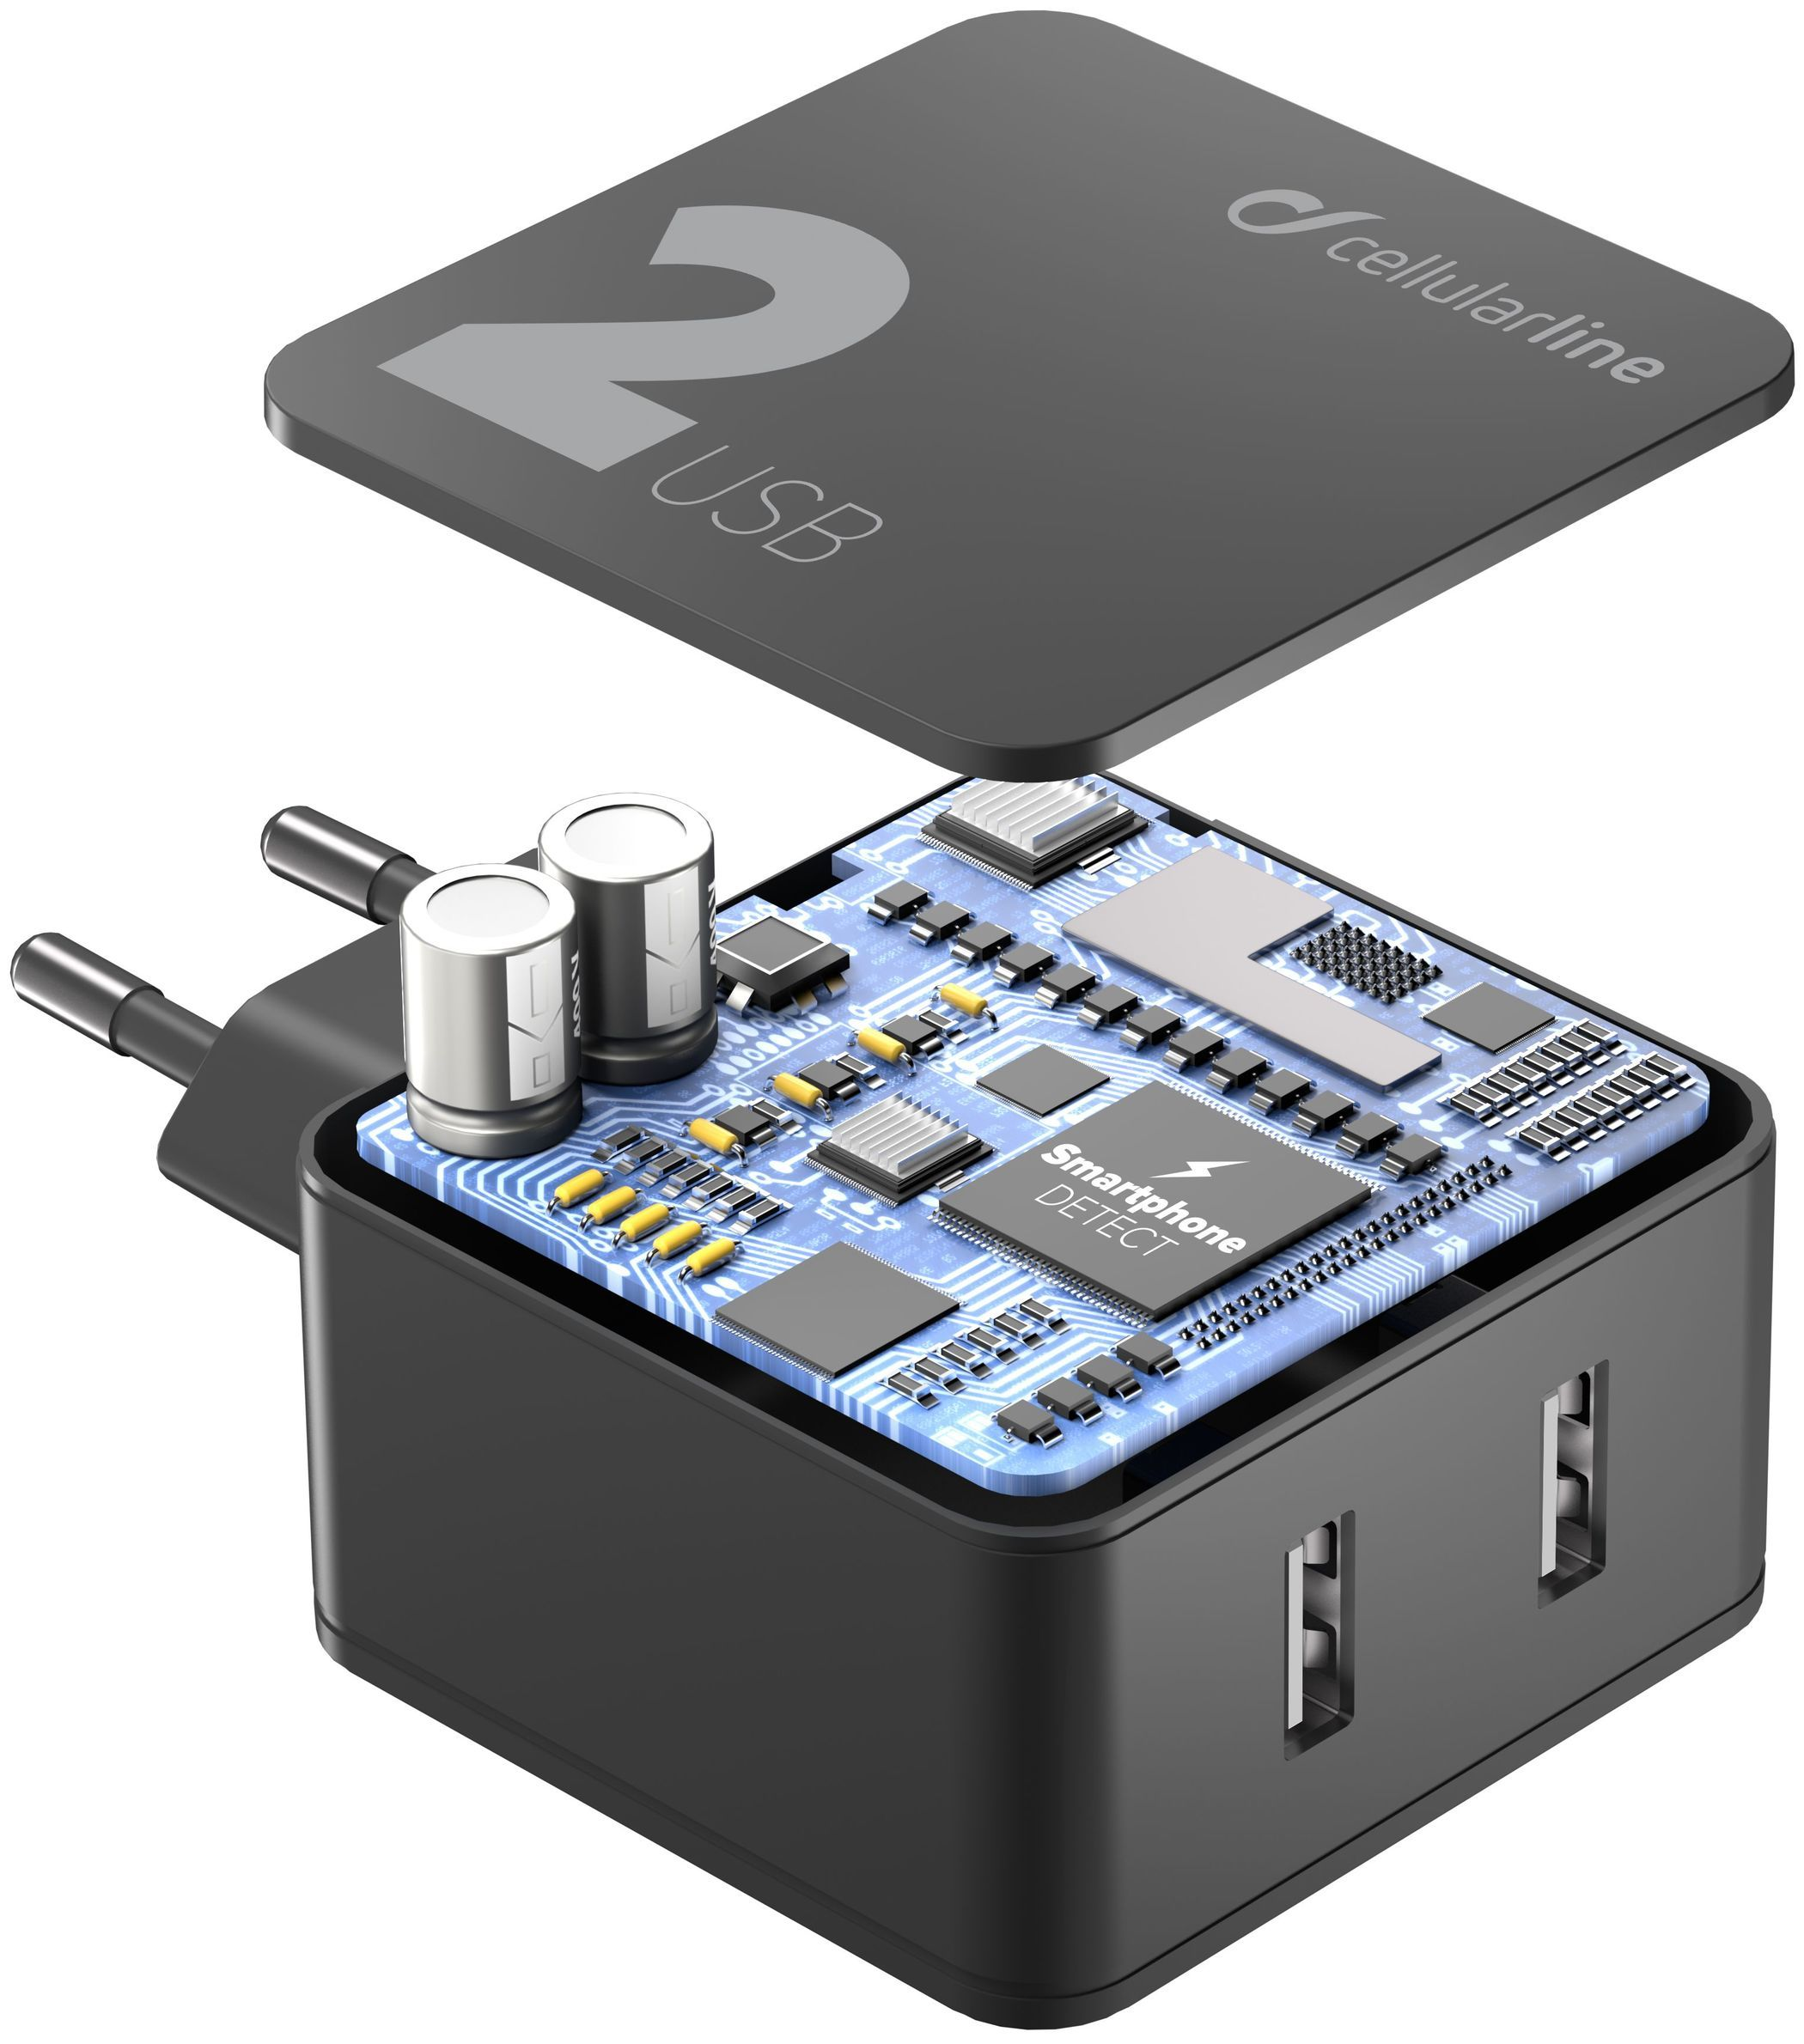 Síťová nabíječka Cellularline Multipower 2 s technologií Smartphone detect, 2 x USB port, 24W, černá 